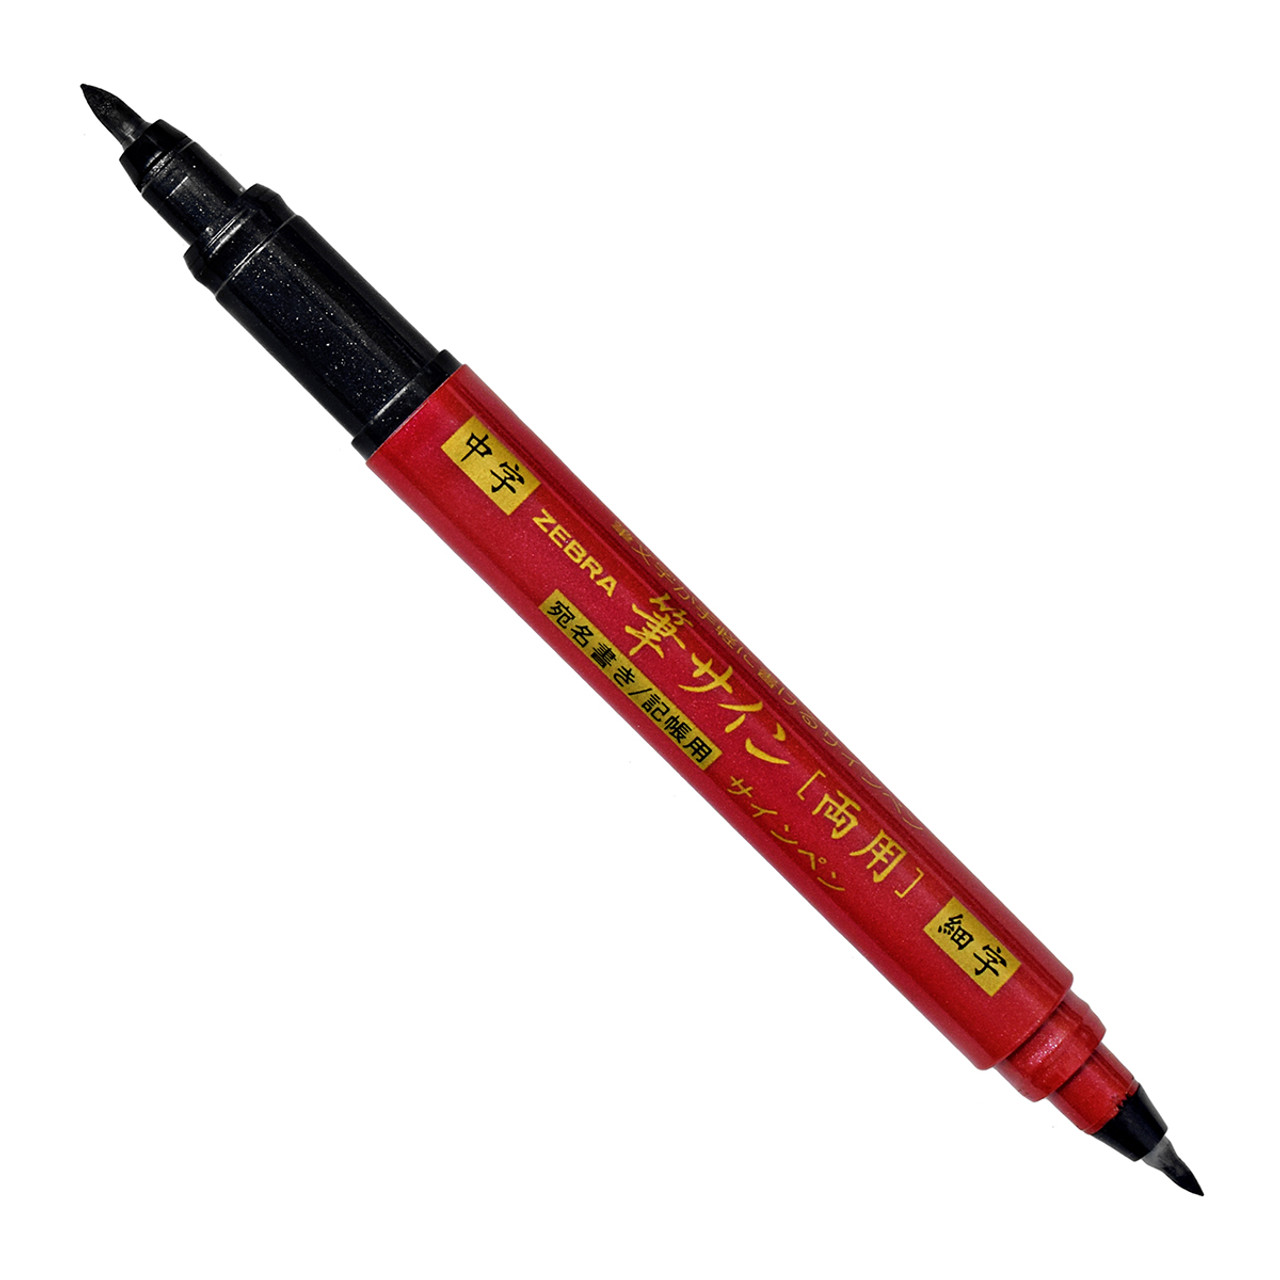 Zebra Pen Mildliner Brush Double-Ended Creative Markers - Medium Pen Point - Fine Marker Point - Brush Pen Point Style - Bullet Marker Point Style 